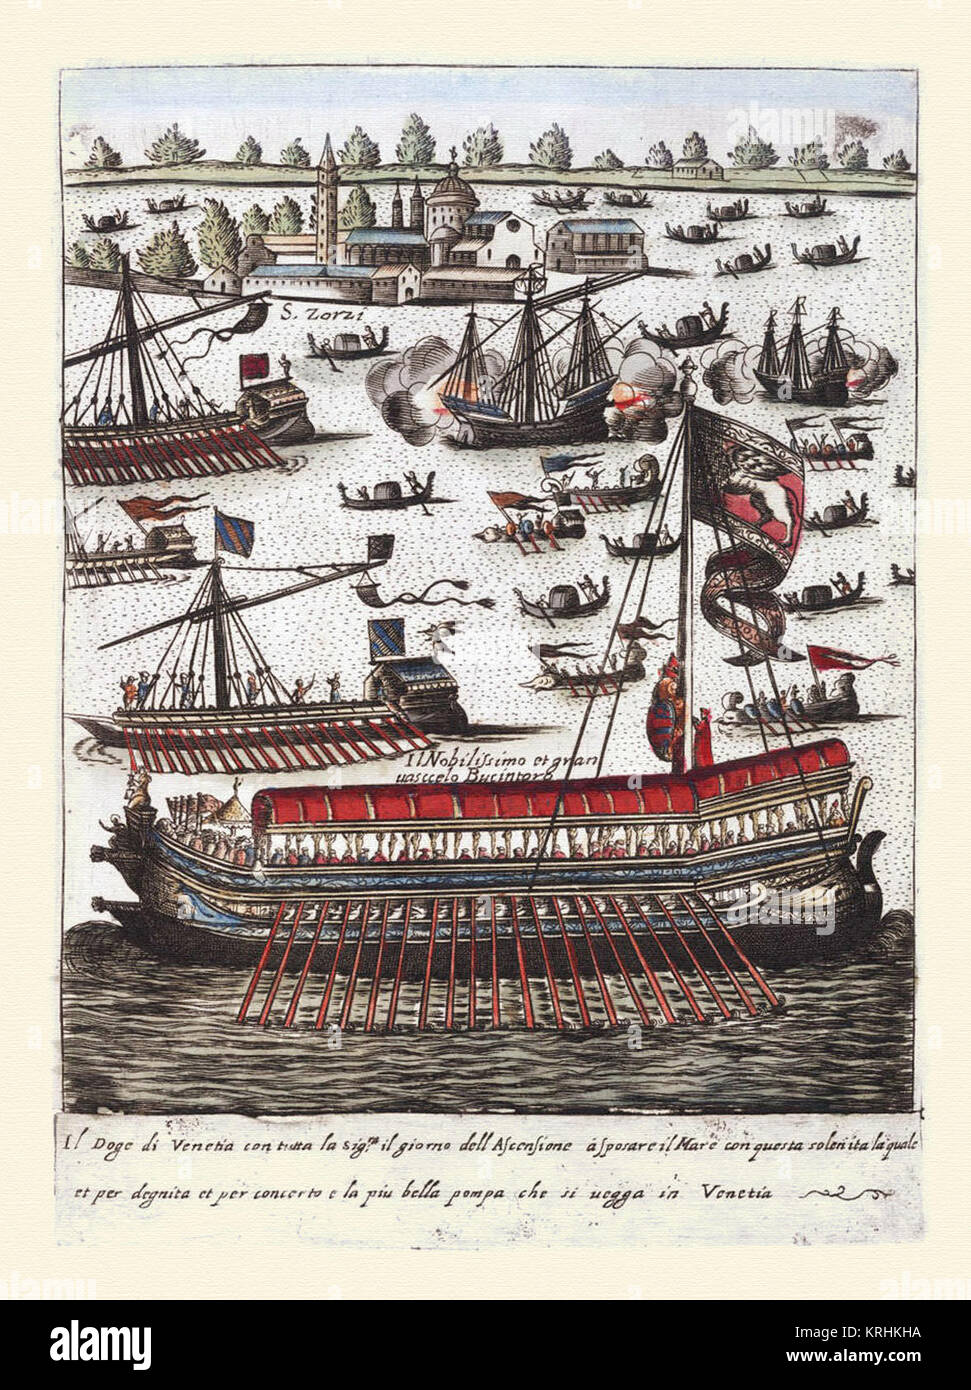 Cortejo del Dux et notables de Venecia el dia de la Ascension-Habiti hvomeni d'et donne venetiane 1609 Banque D'Images